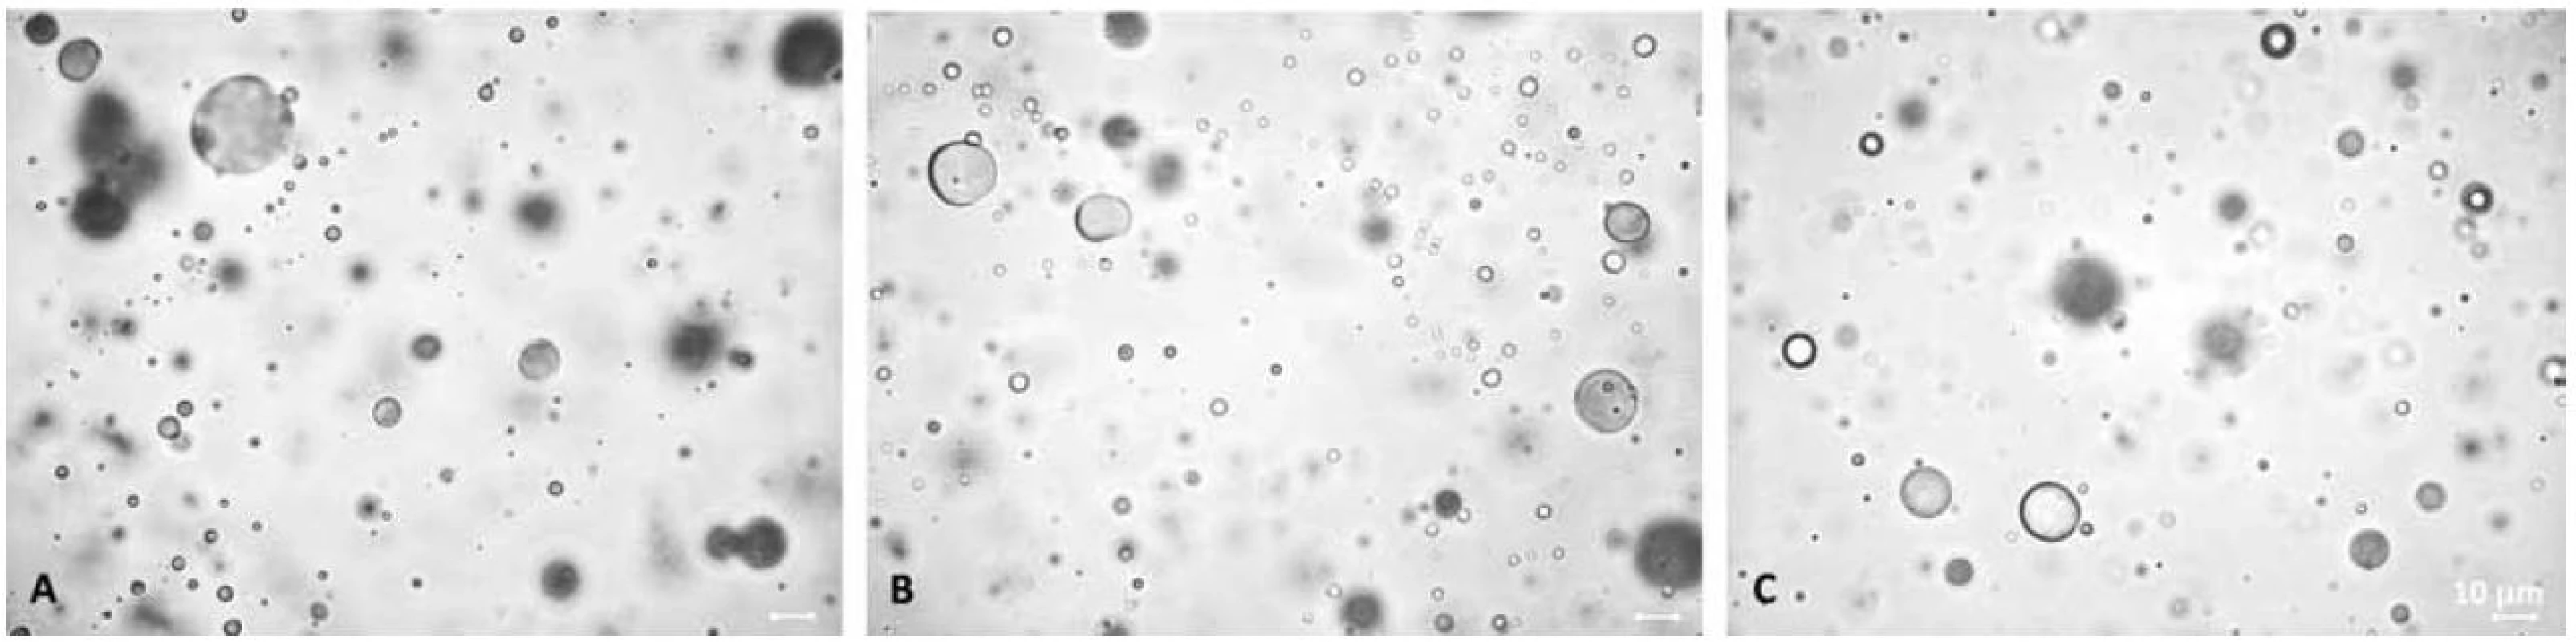 Mikroskopický vzhled gelů neobsahujících polysorbát 80: A – bez xylitolu, B – 10 % xylitolu, C – 20 % xylitolu